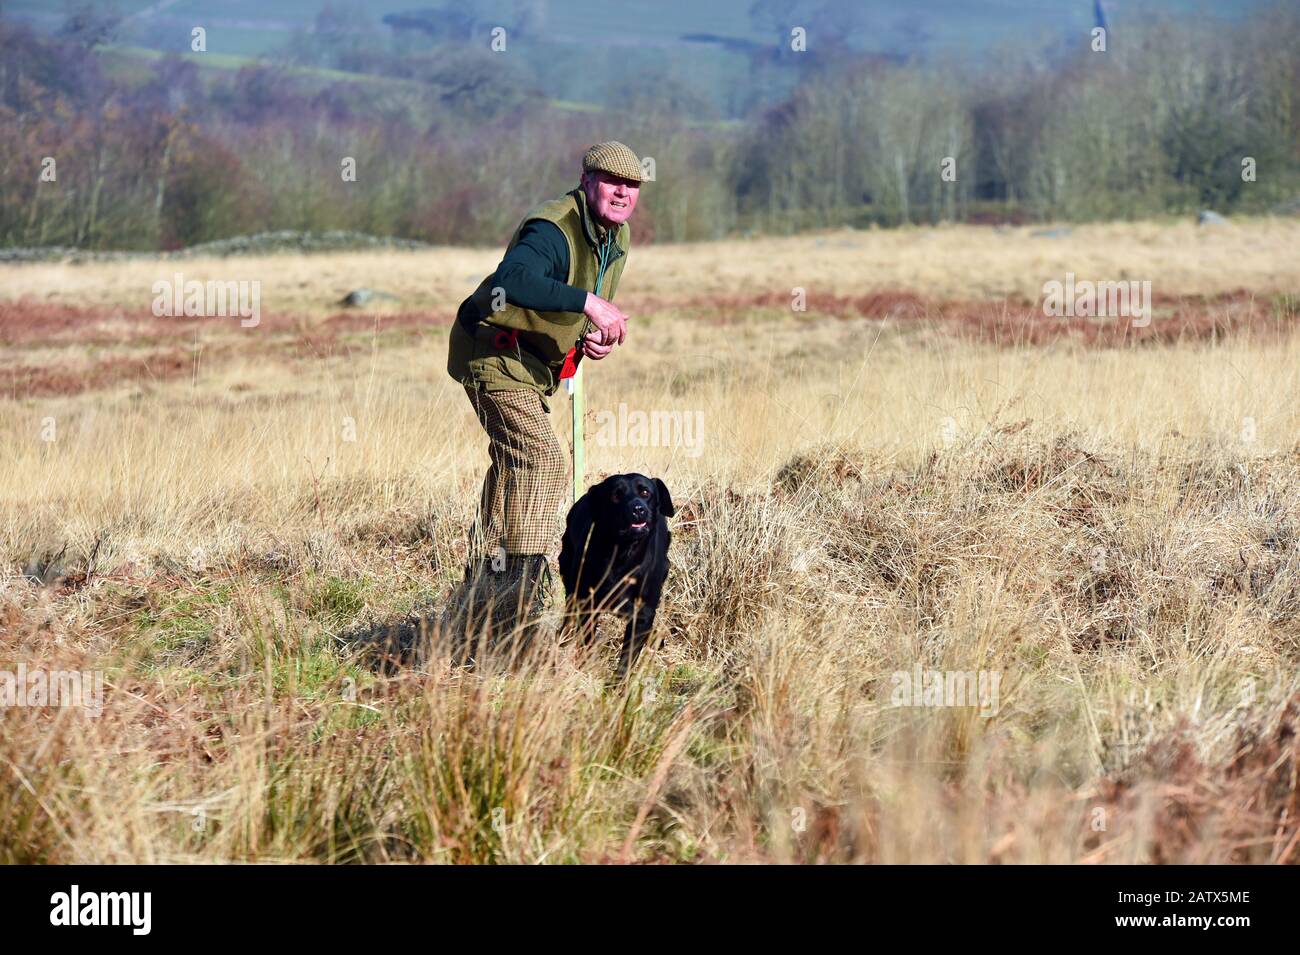 Session de formation des chiens d'arme Barden Moor Yorkshire Dales Royaume-Uni un gardien de but forme son chien à fetch un oiseau factice. Banque D'Images